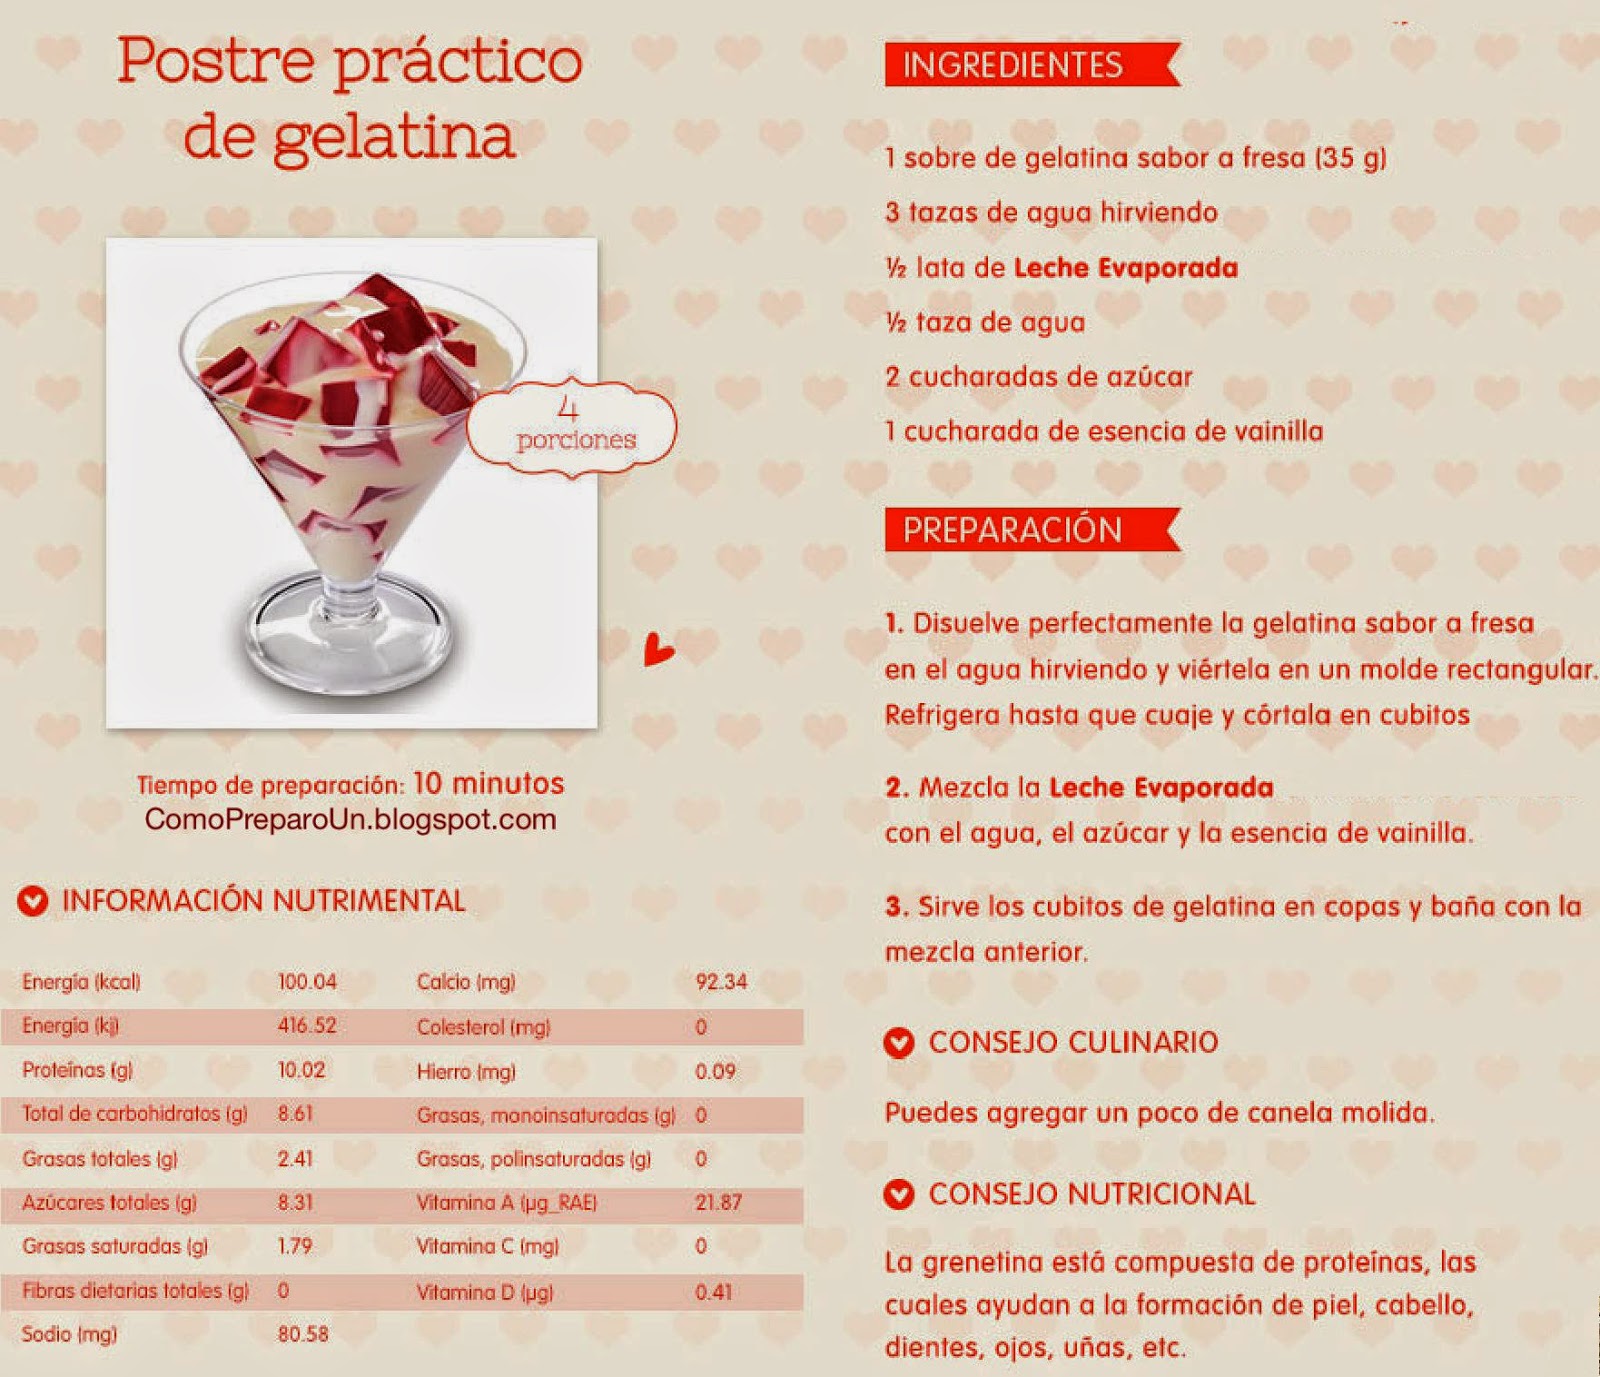 RECIPES - POSTRE PRÁCTICO DE GELATINA - Recetas por el Dia de San Valentín